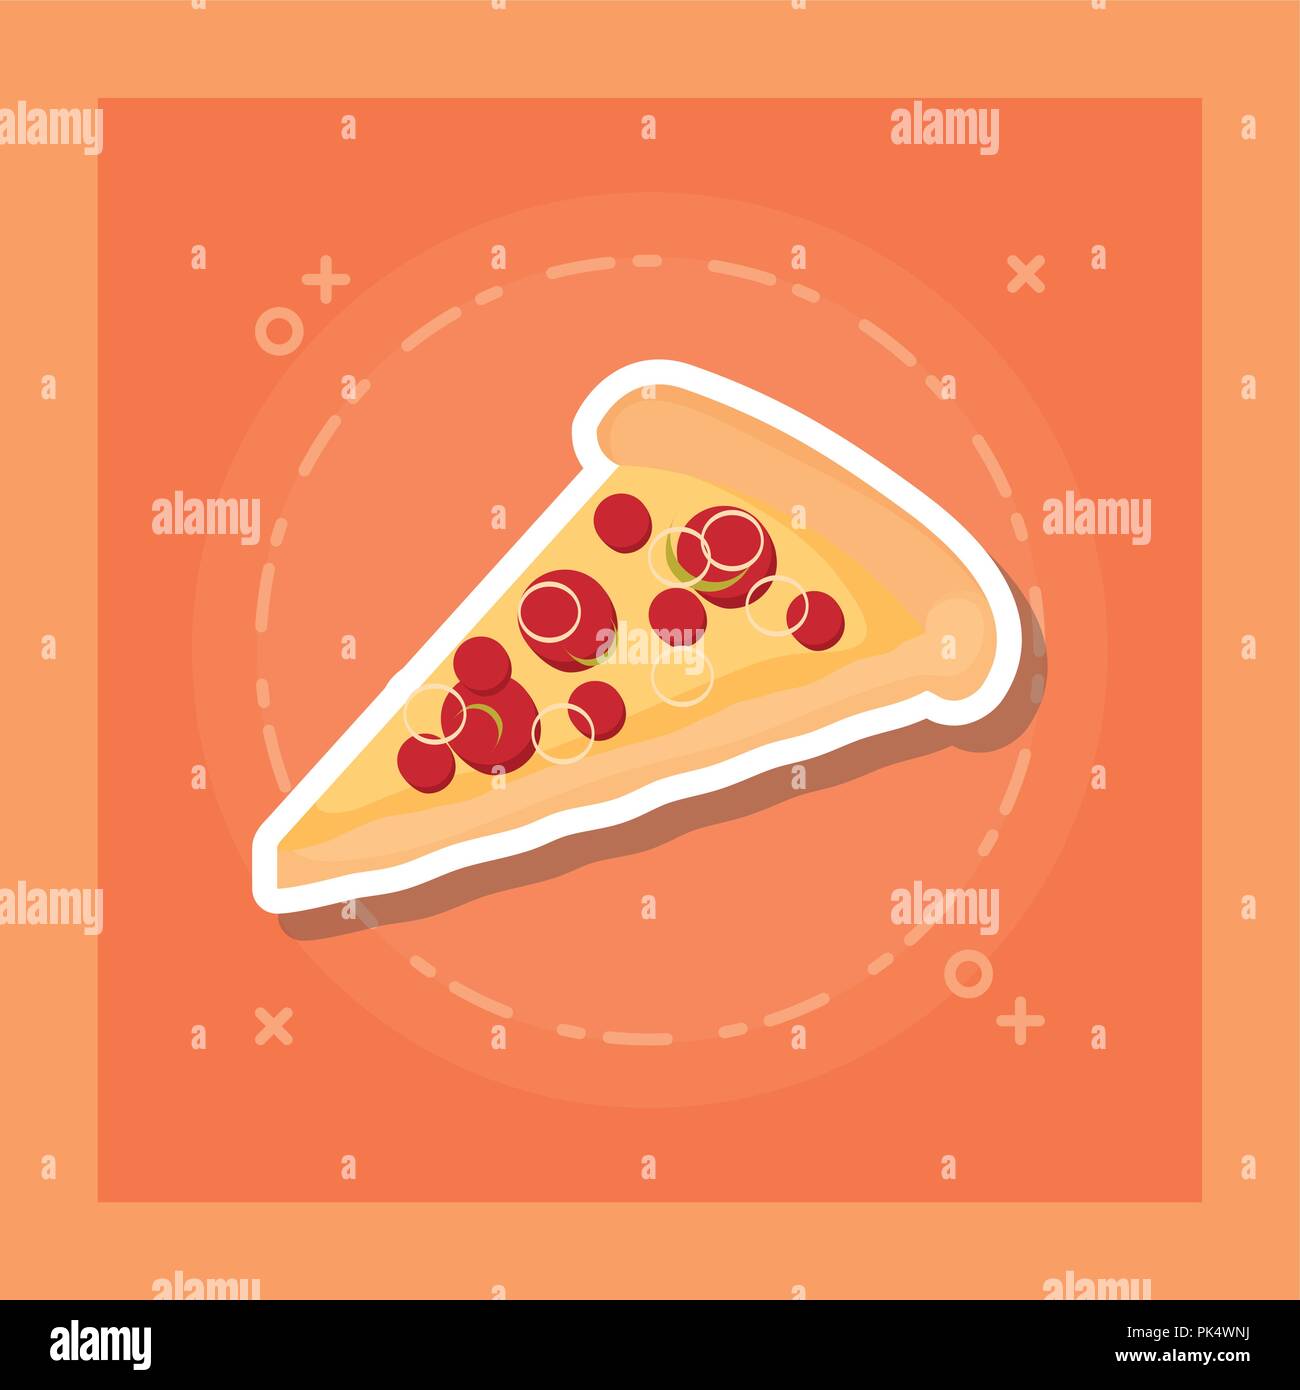 delicious pizza portion icon vector illustration design Stock Vector